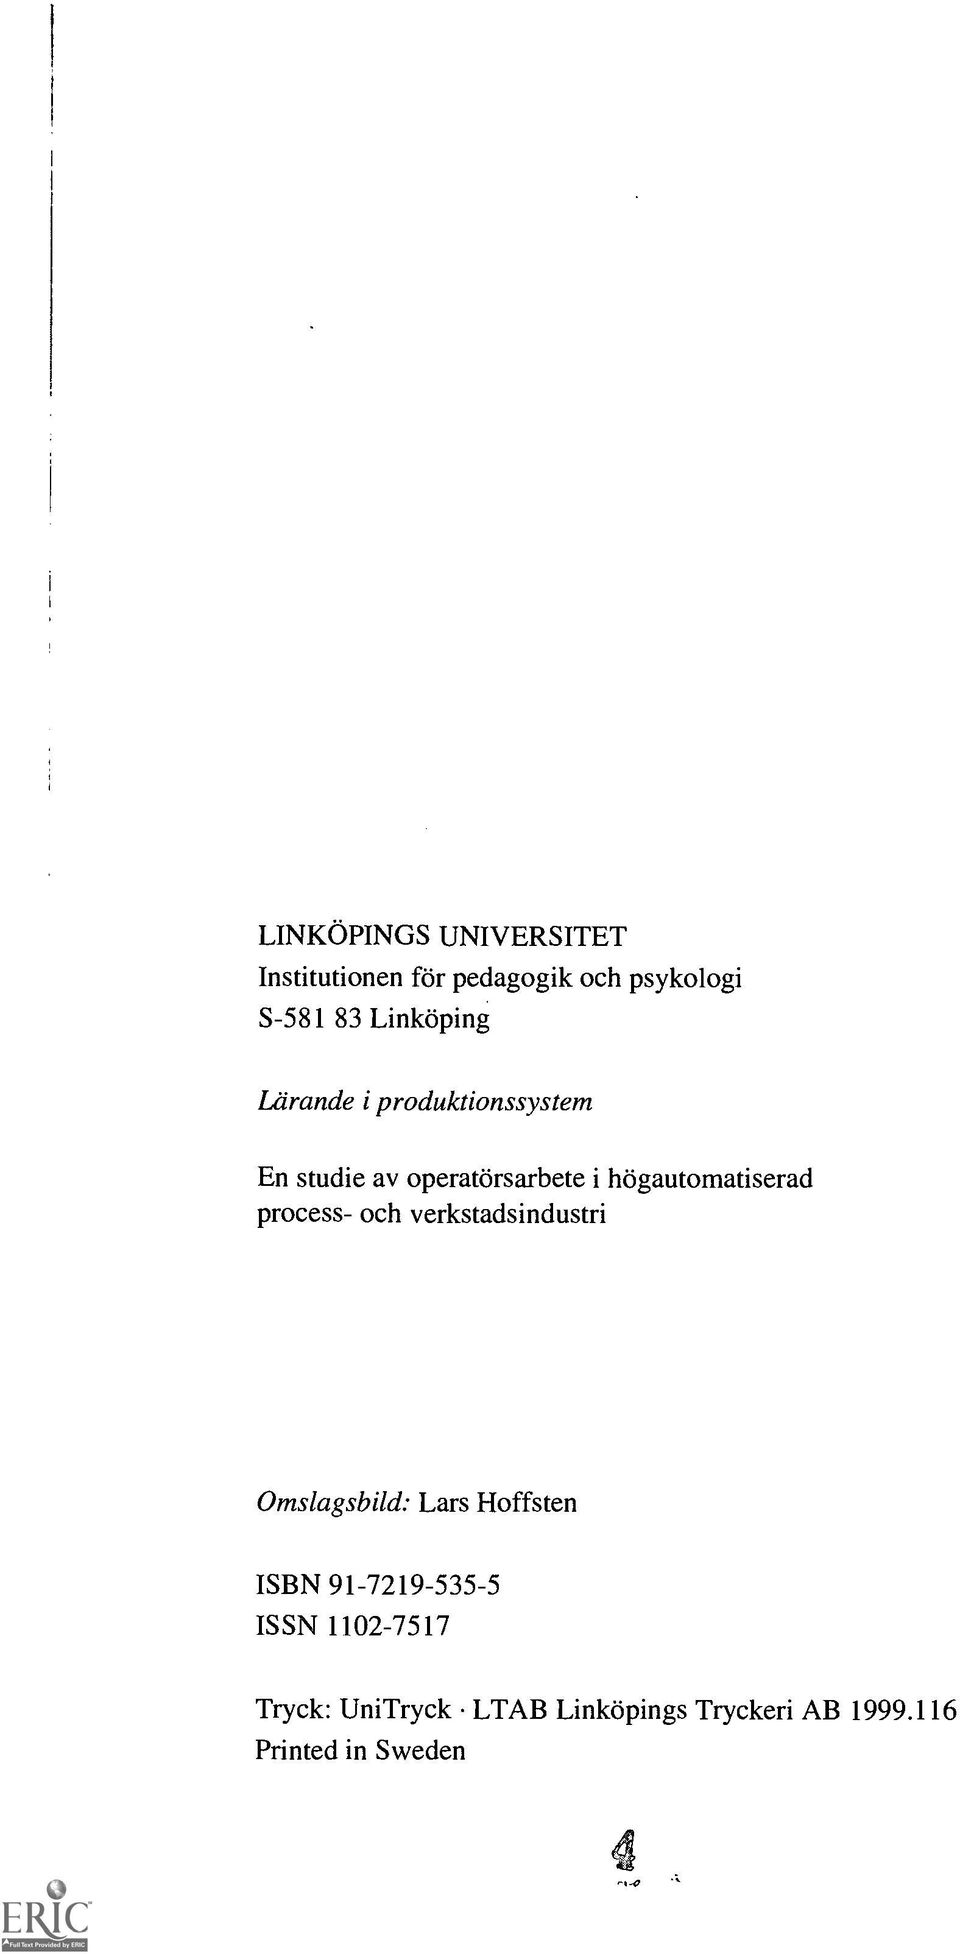 hogautomatiserad process- och verkstadsindustri Omslagsbild: Lars Hoffsten ISBN